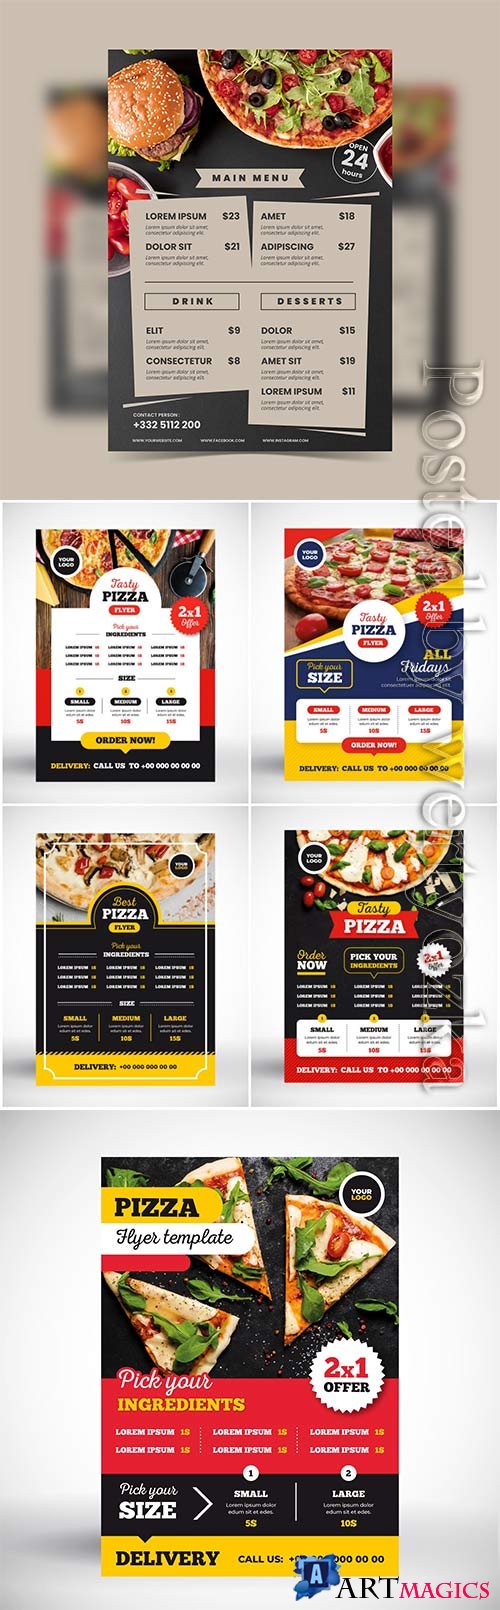 Pizza menu vector concept 